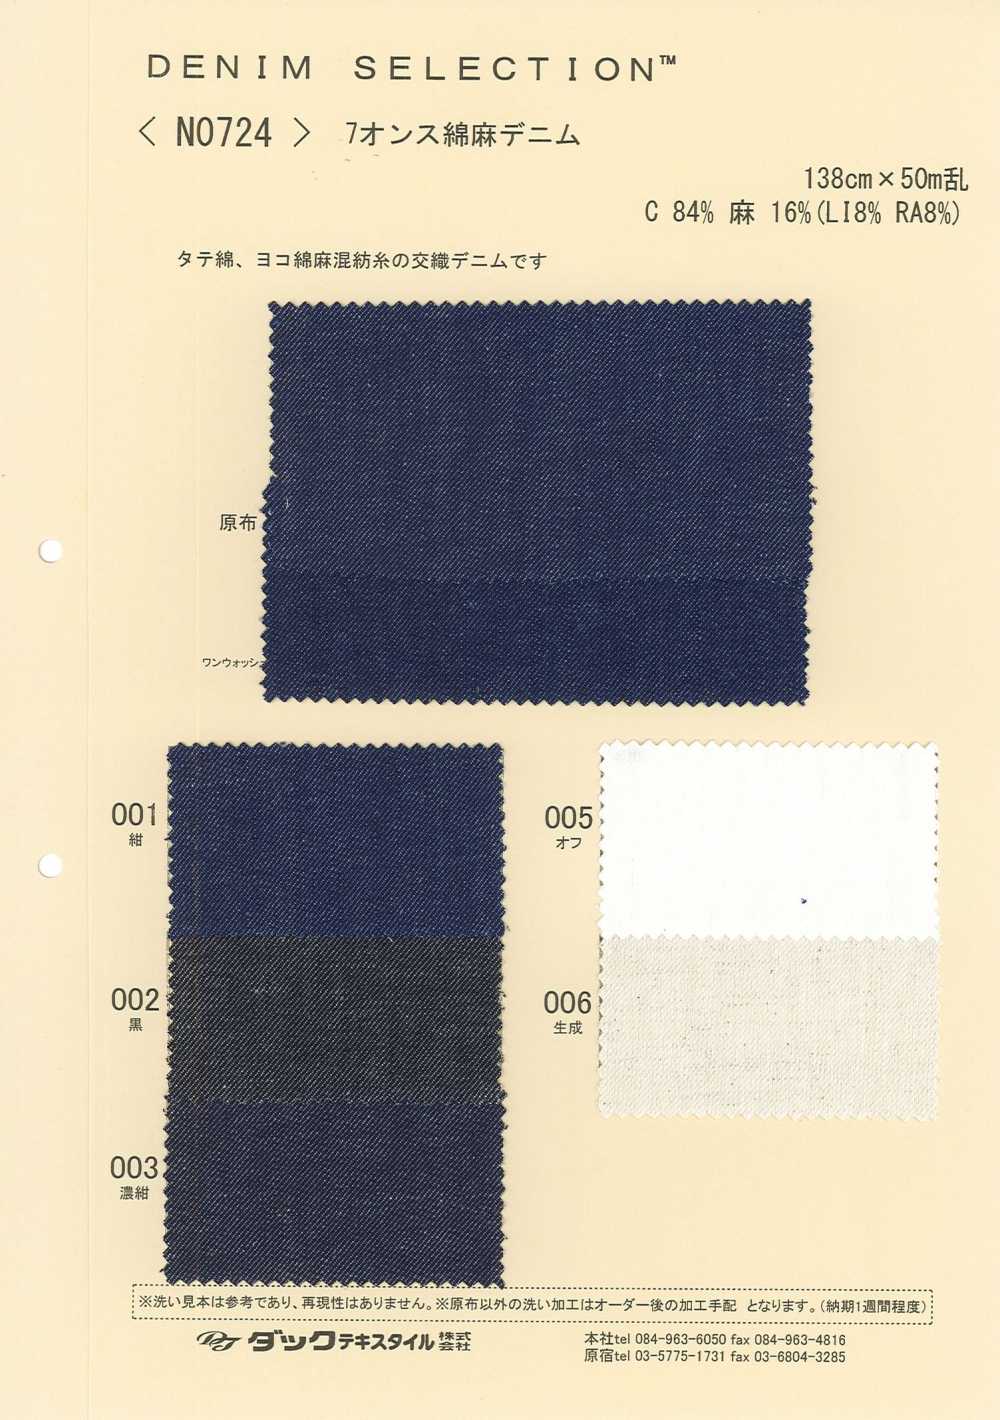 N0724 Denim De Lin[Fabrication De Textile] DUCK TEXTILE